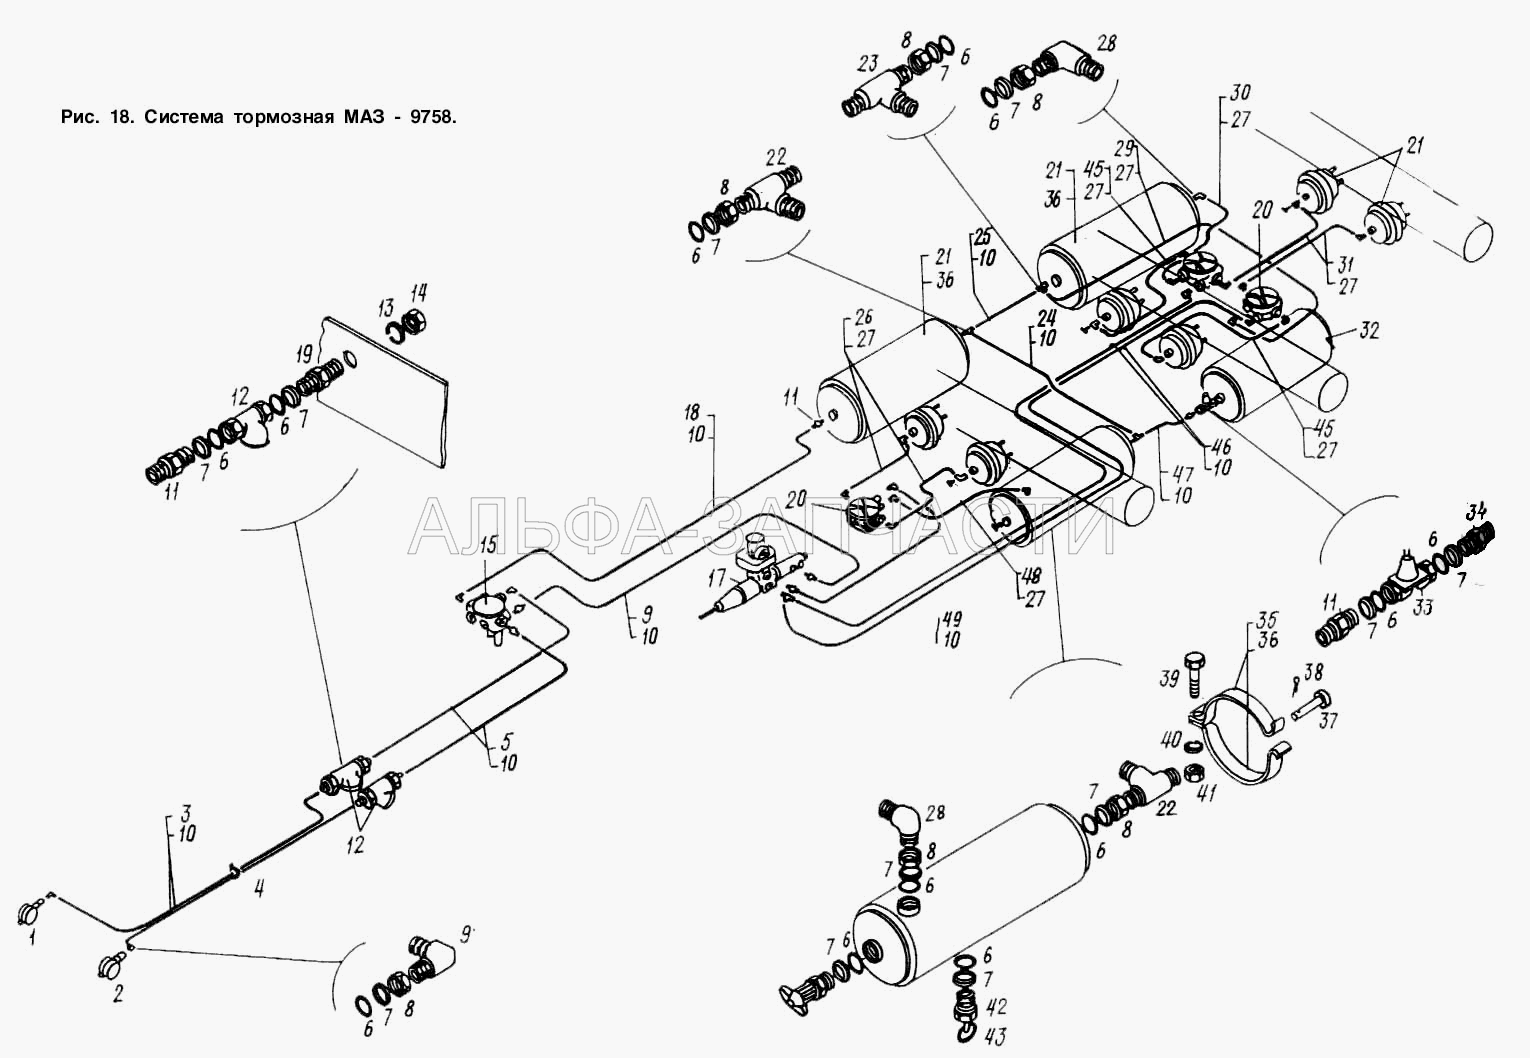 Система тормозная МАЗ 9758 (100-3521111 Головка соединительная типа «ПАЛМ») 